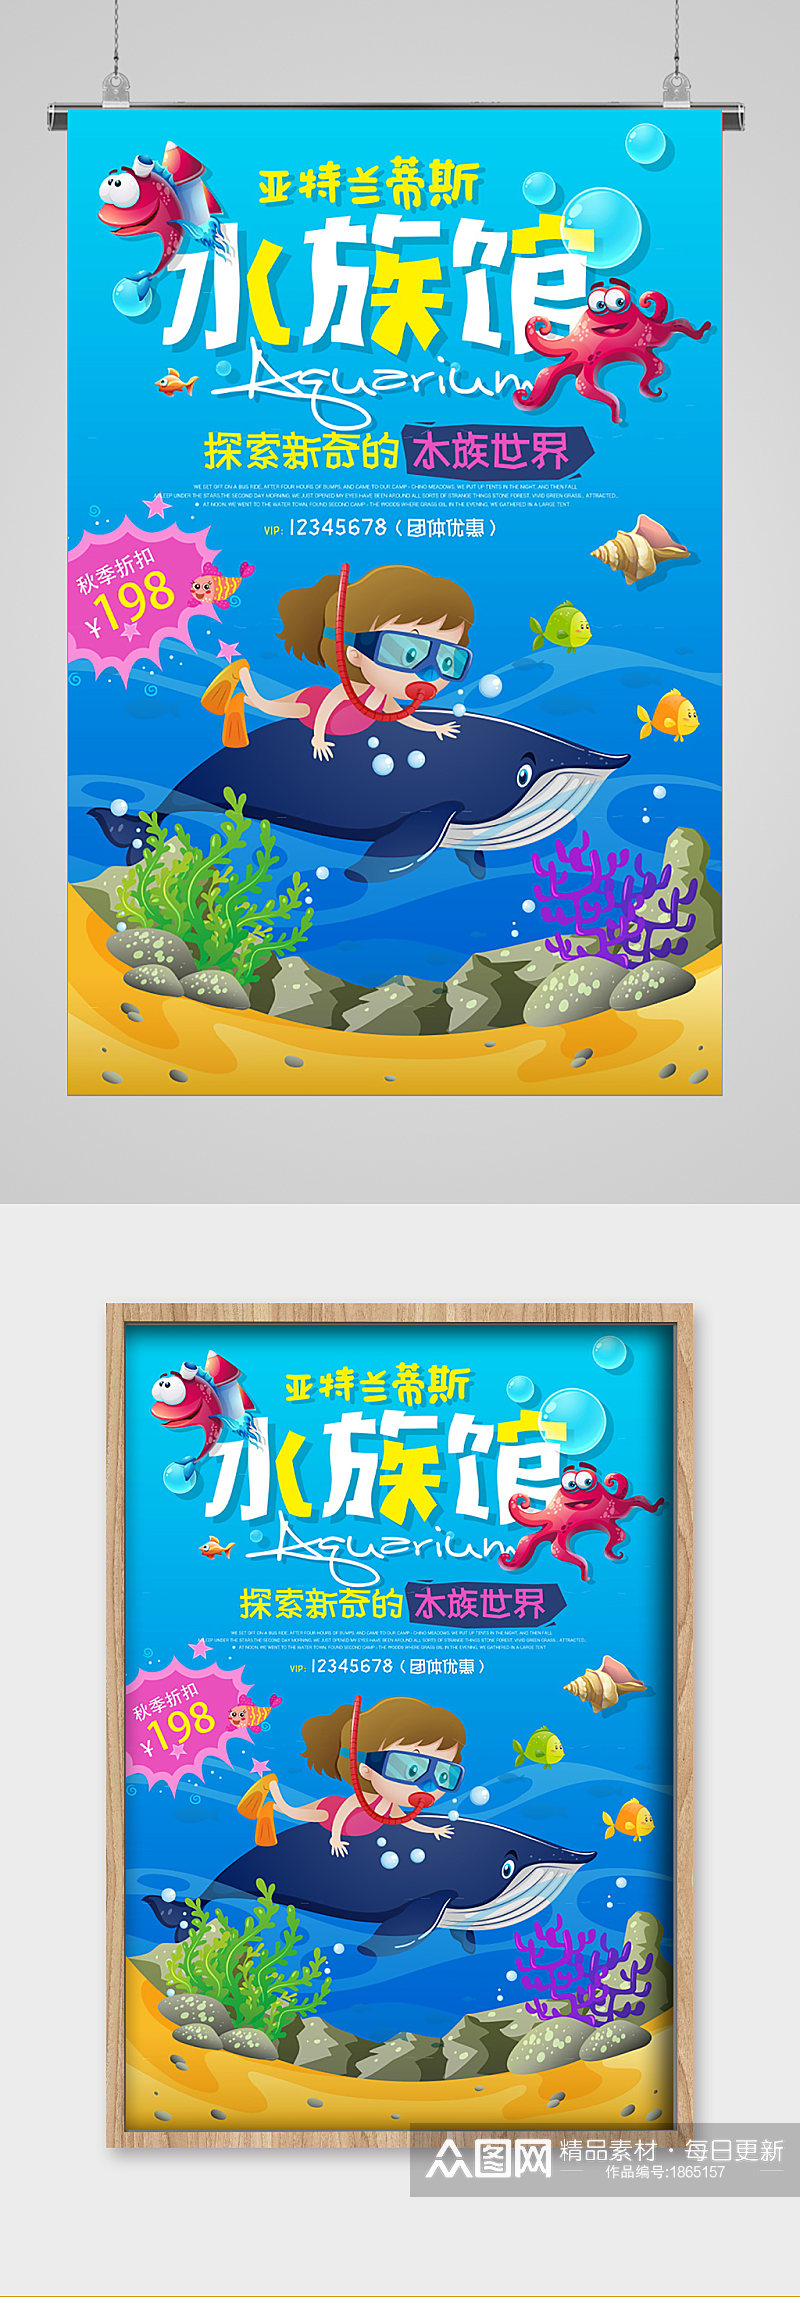 水族馆促销夏日梦幻海报素材